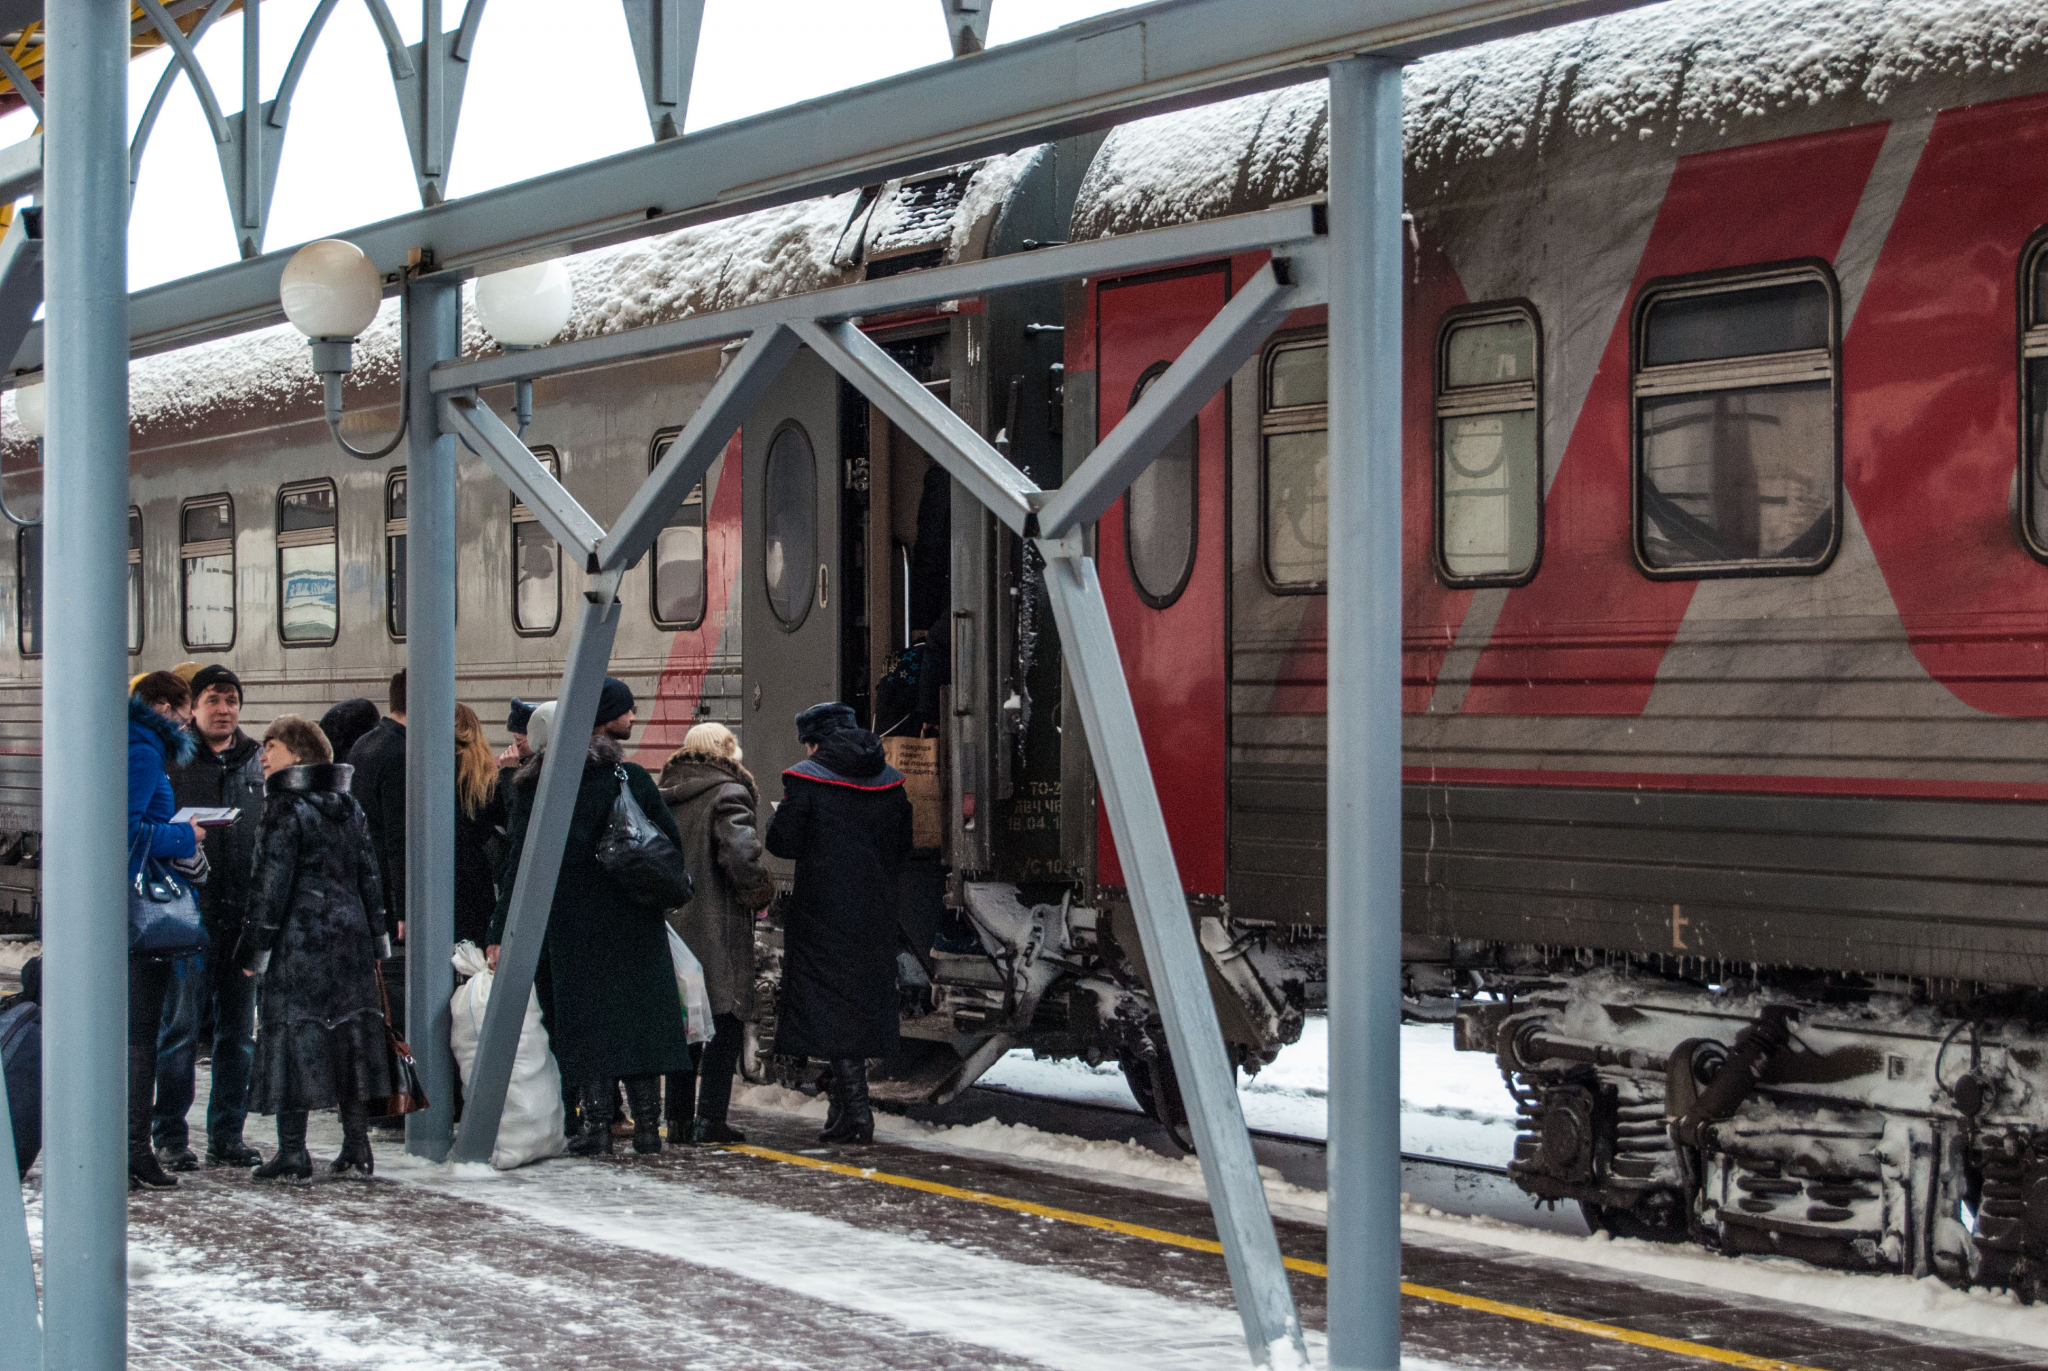 РЖД снижает цены на билеты из Москвы в Саранск